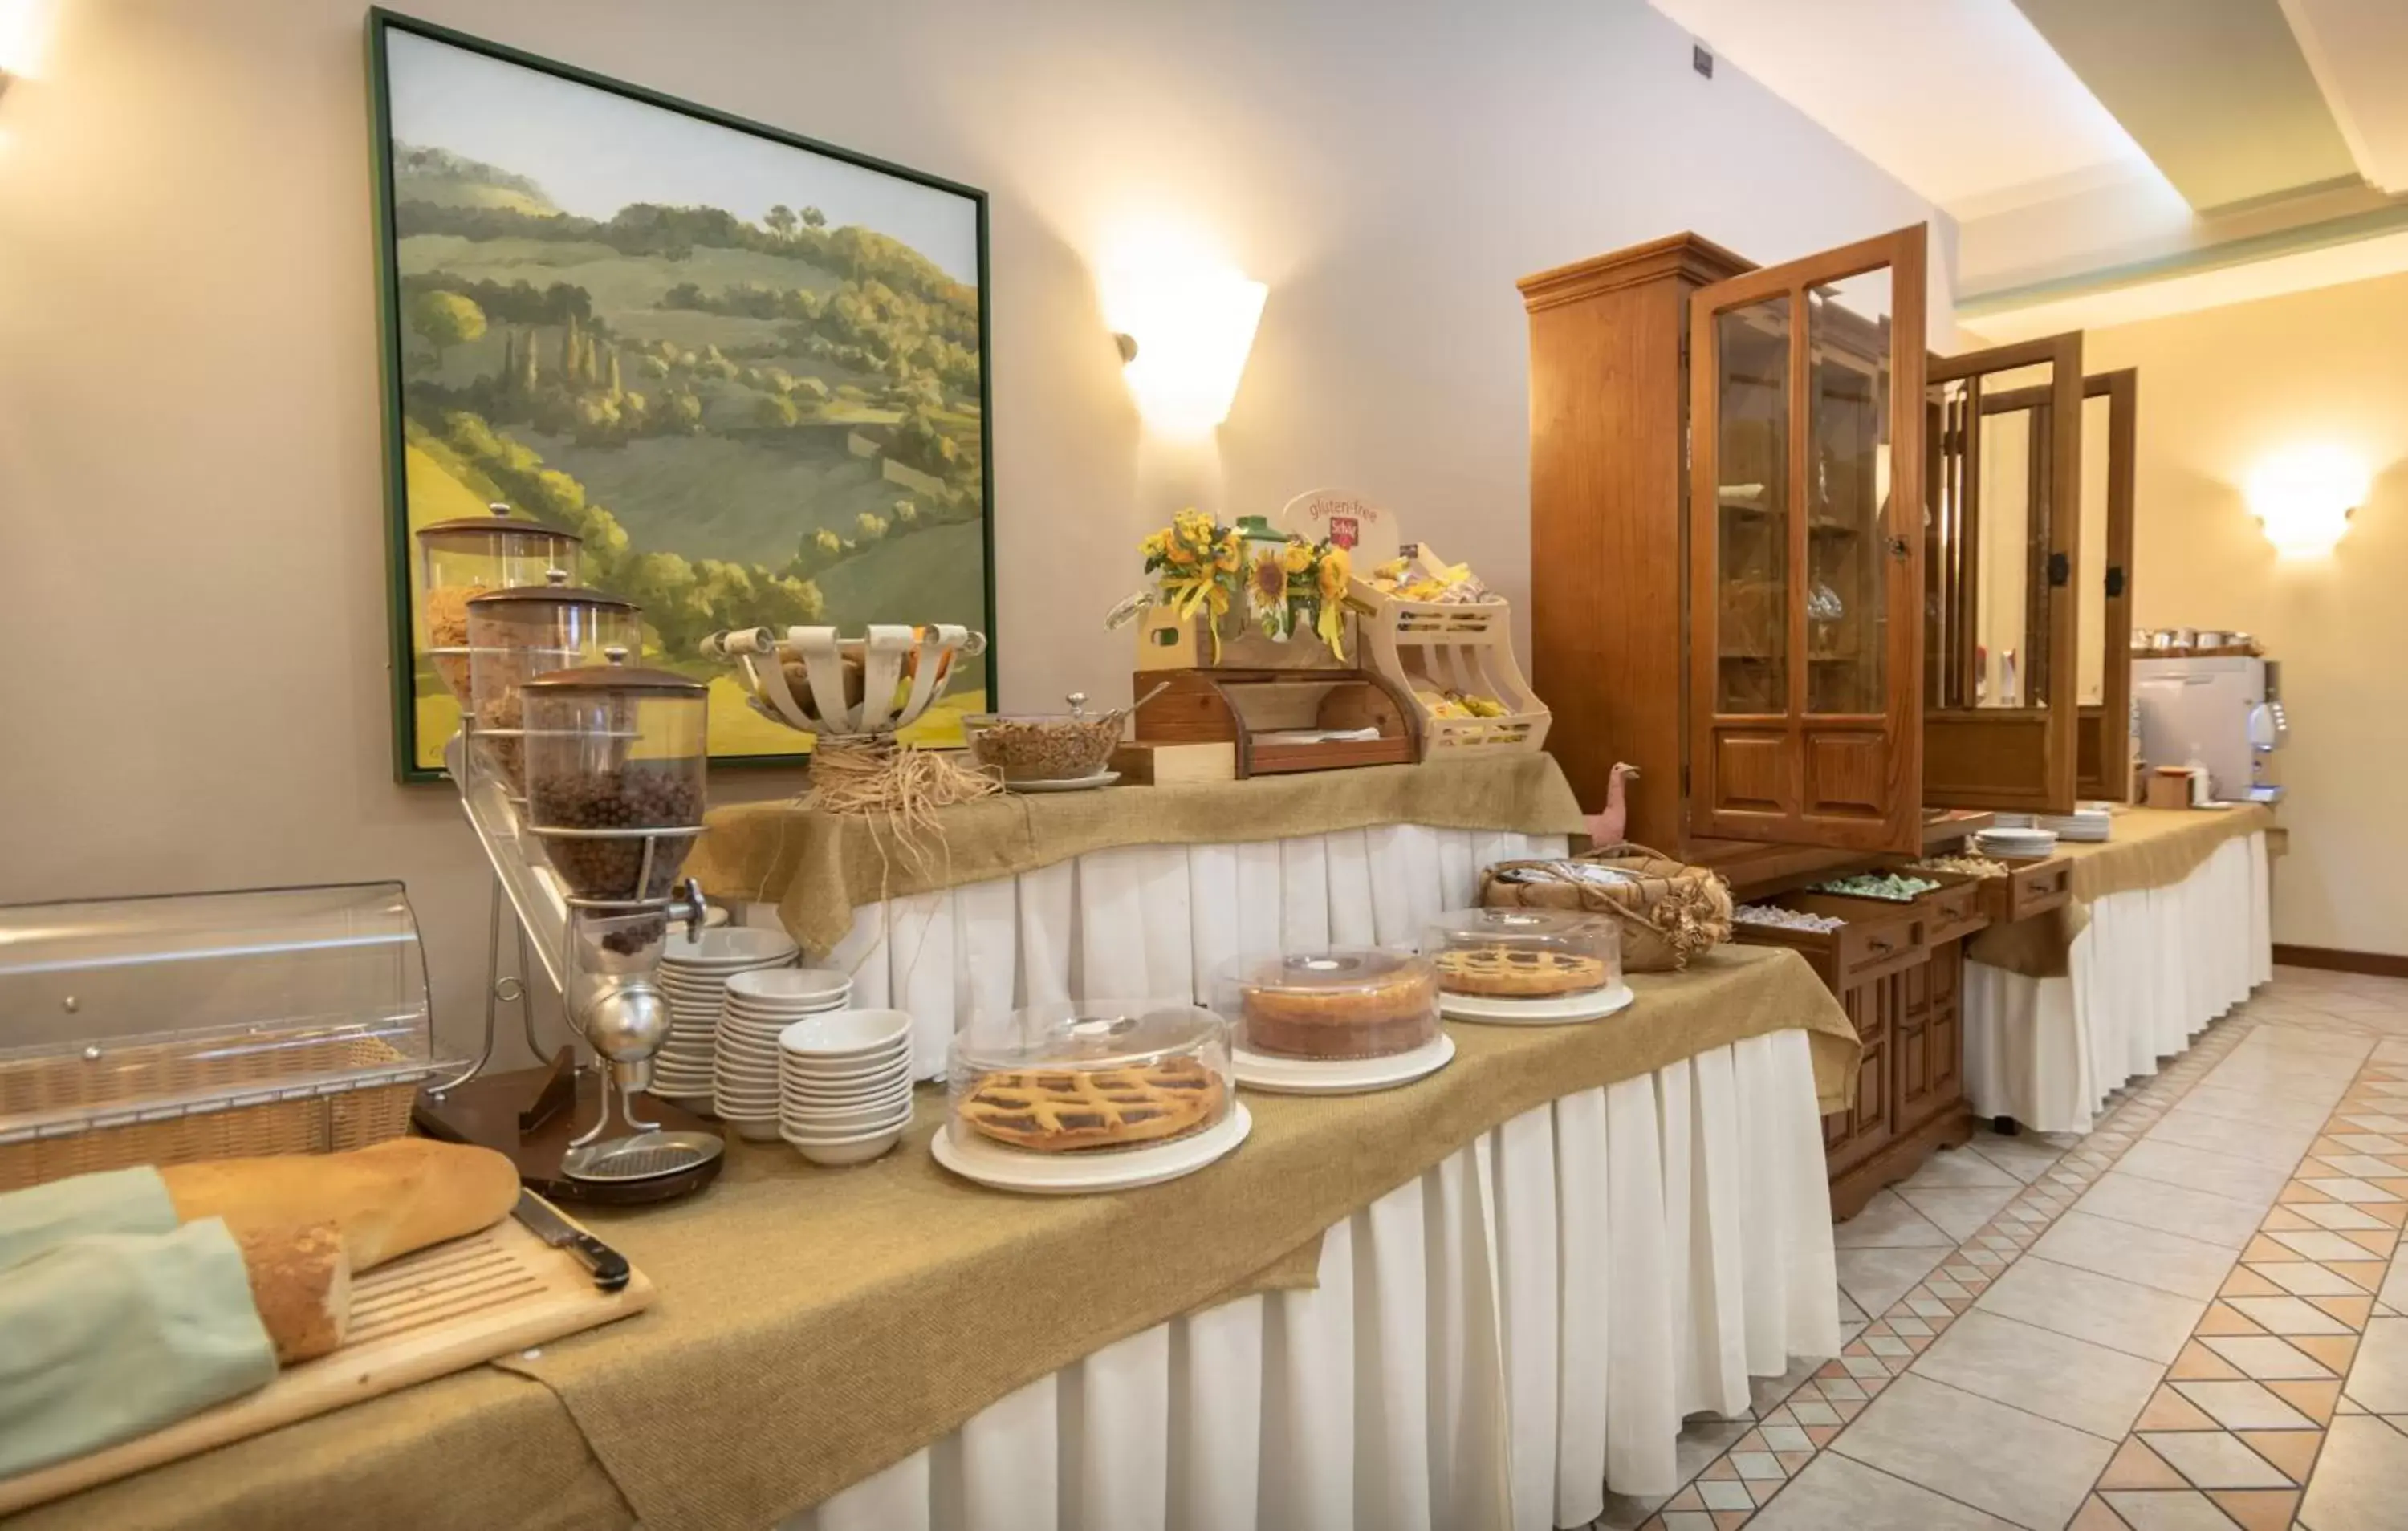 Buffet breakfast in Hotel La Terrazza RESTAURANT & SPA